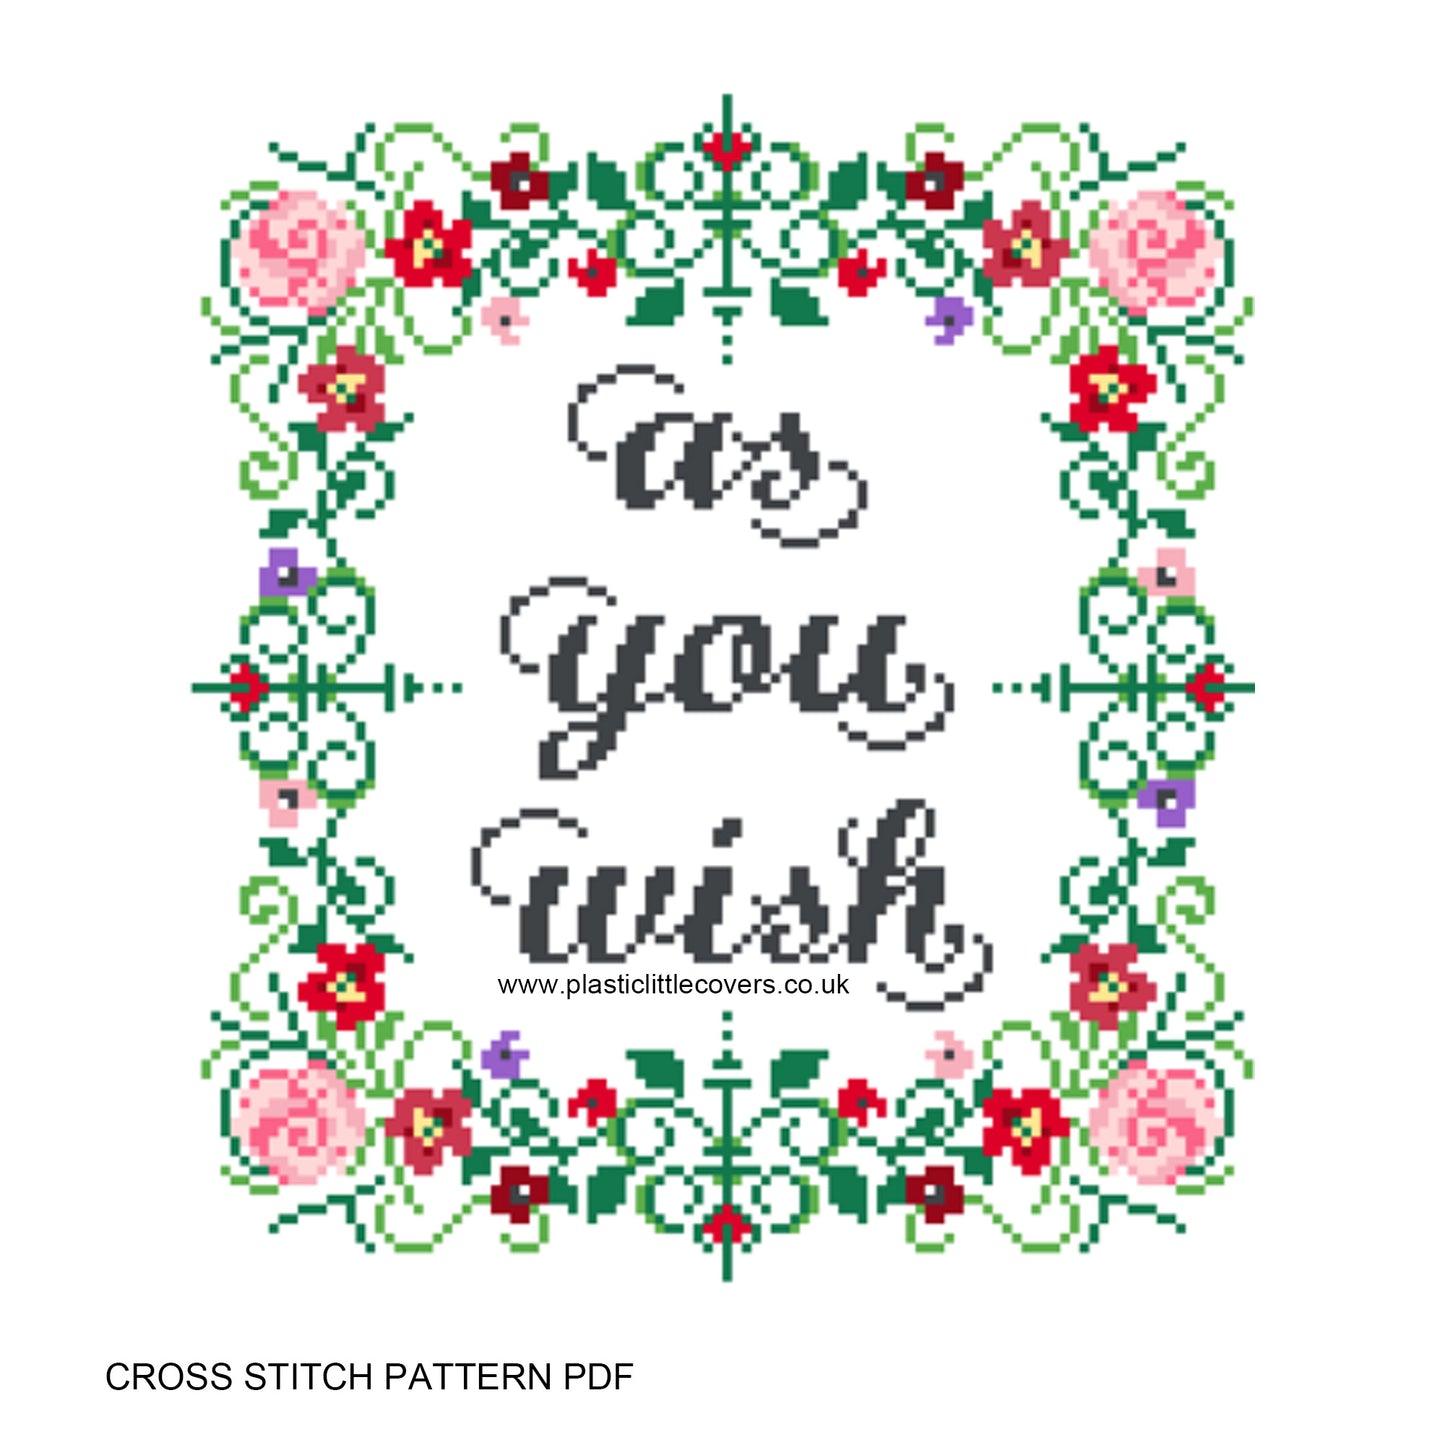 As You Wish - Cross Stitch Pattern PDF.